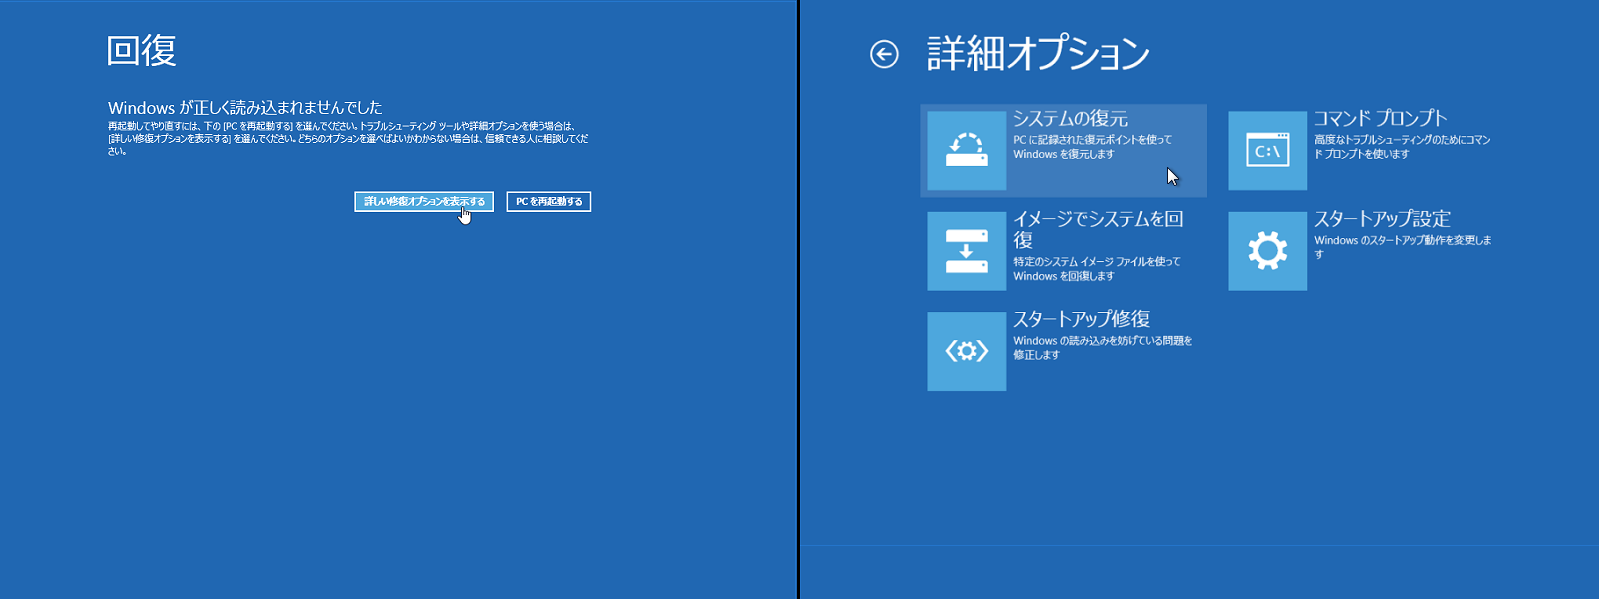 3@Windows 8Windows 8.1ŕNɎsƁAu񕜁vy[W\̂ŁAWinRENāuVXe̕vs